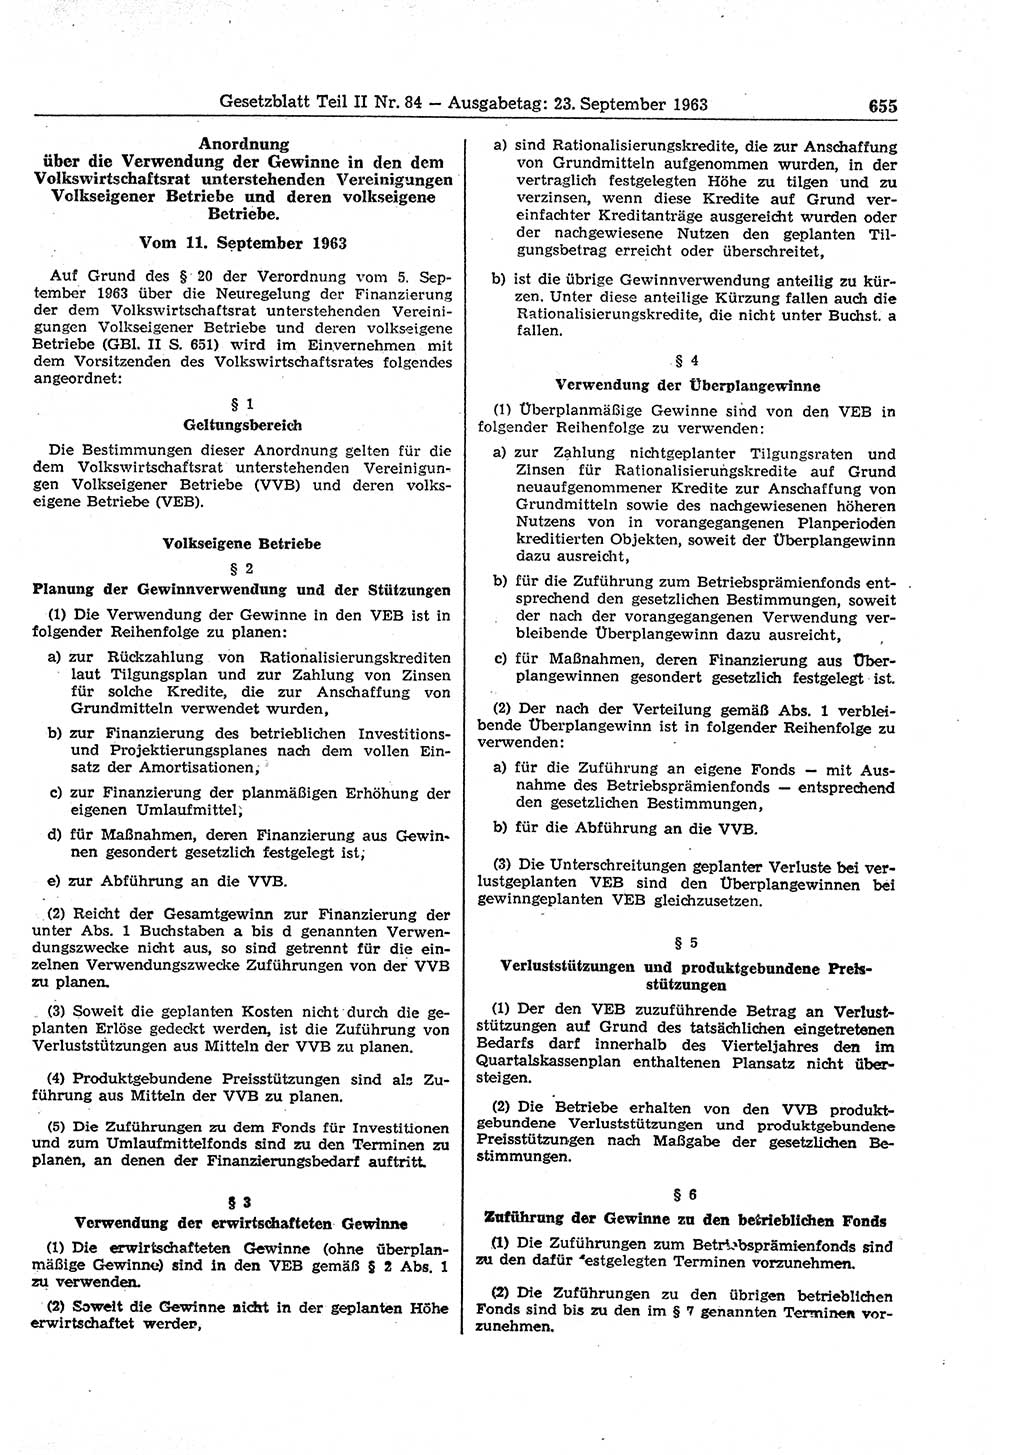 Gesetzblatt (GBl.) der Deutschen Demokratischen Republik (DDR) Teil ⅠⅠ 1963, Seite 655 (GBl. DDR ⅠⅠ 1963, S. 655)